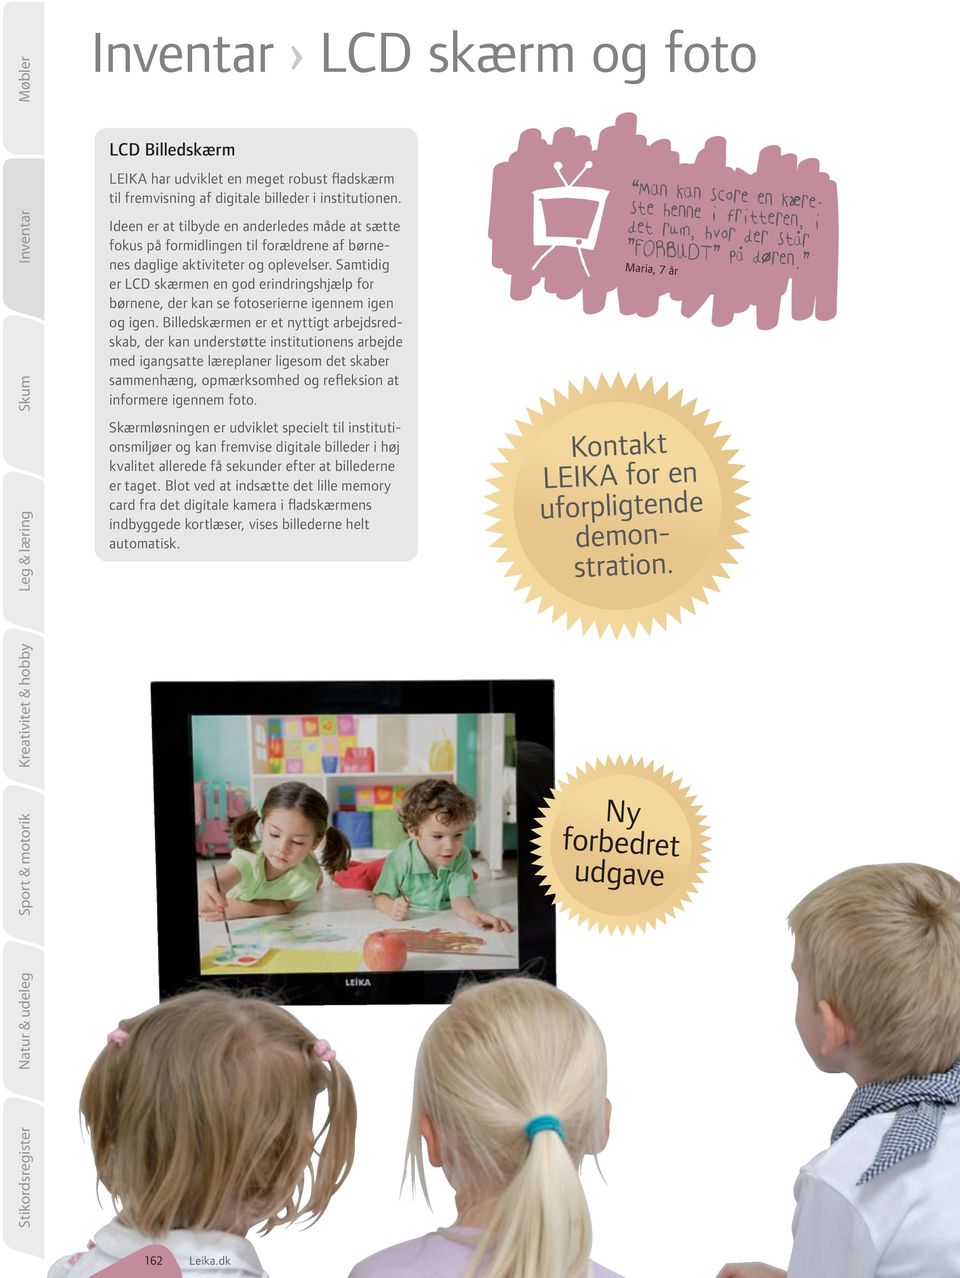 Samtidig er LCD skærmen en god erindringshjælp for børnene, der kan se fotoserierne igennem igen og igen.